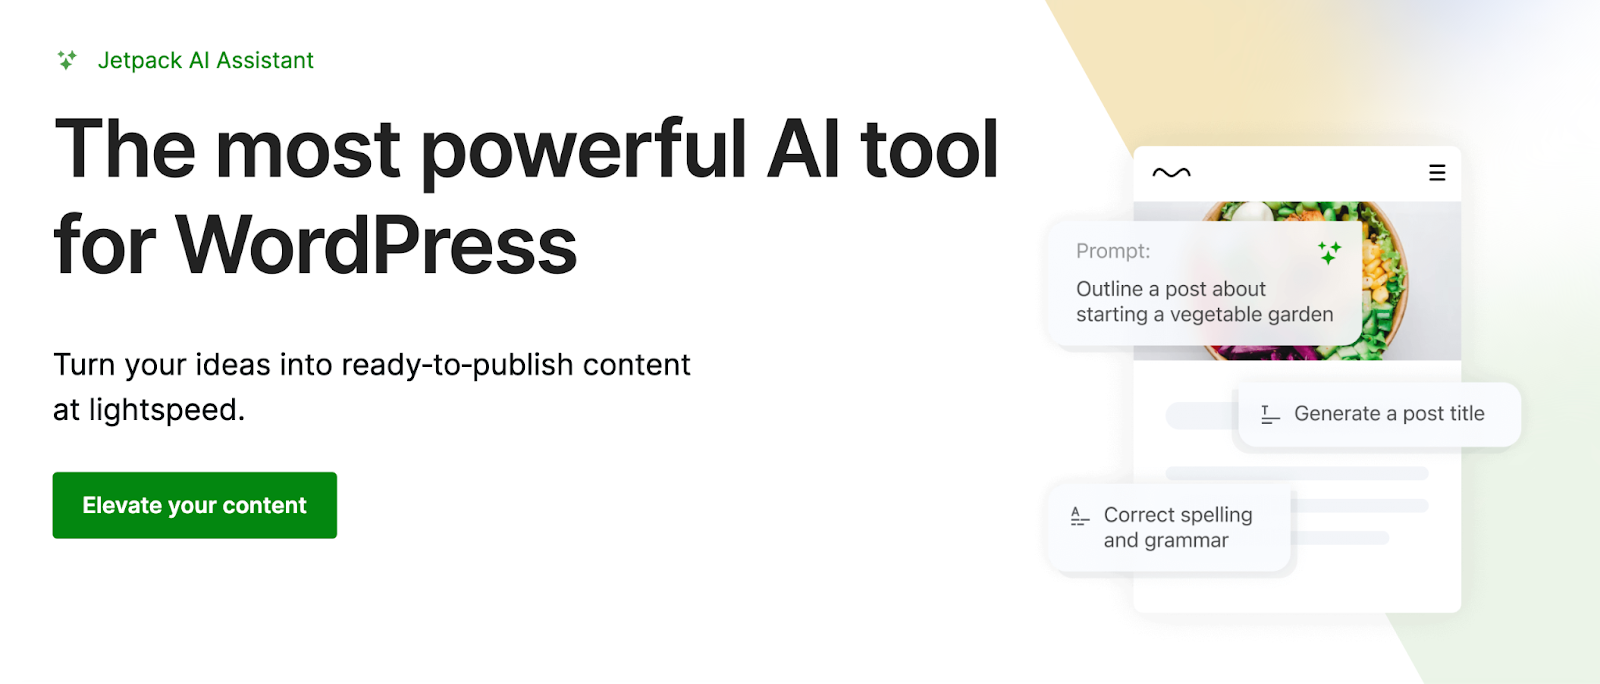 L'assistente AI Jetpack ti consente di passare da un'idea a contenuti di alta qualità in pochi minuti, rendendolo uno dei plugin AI più potenti e utili per WordPress.